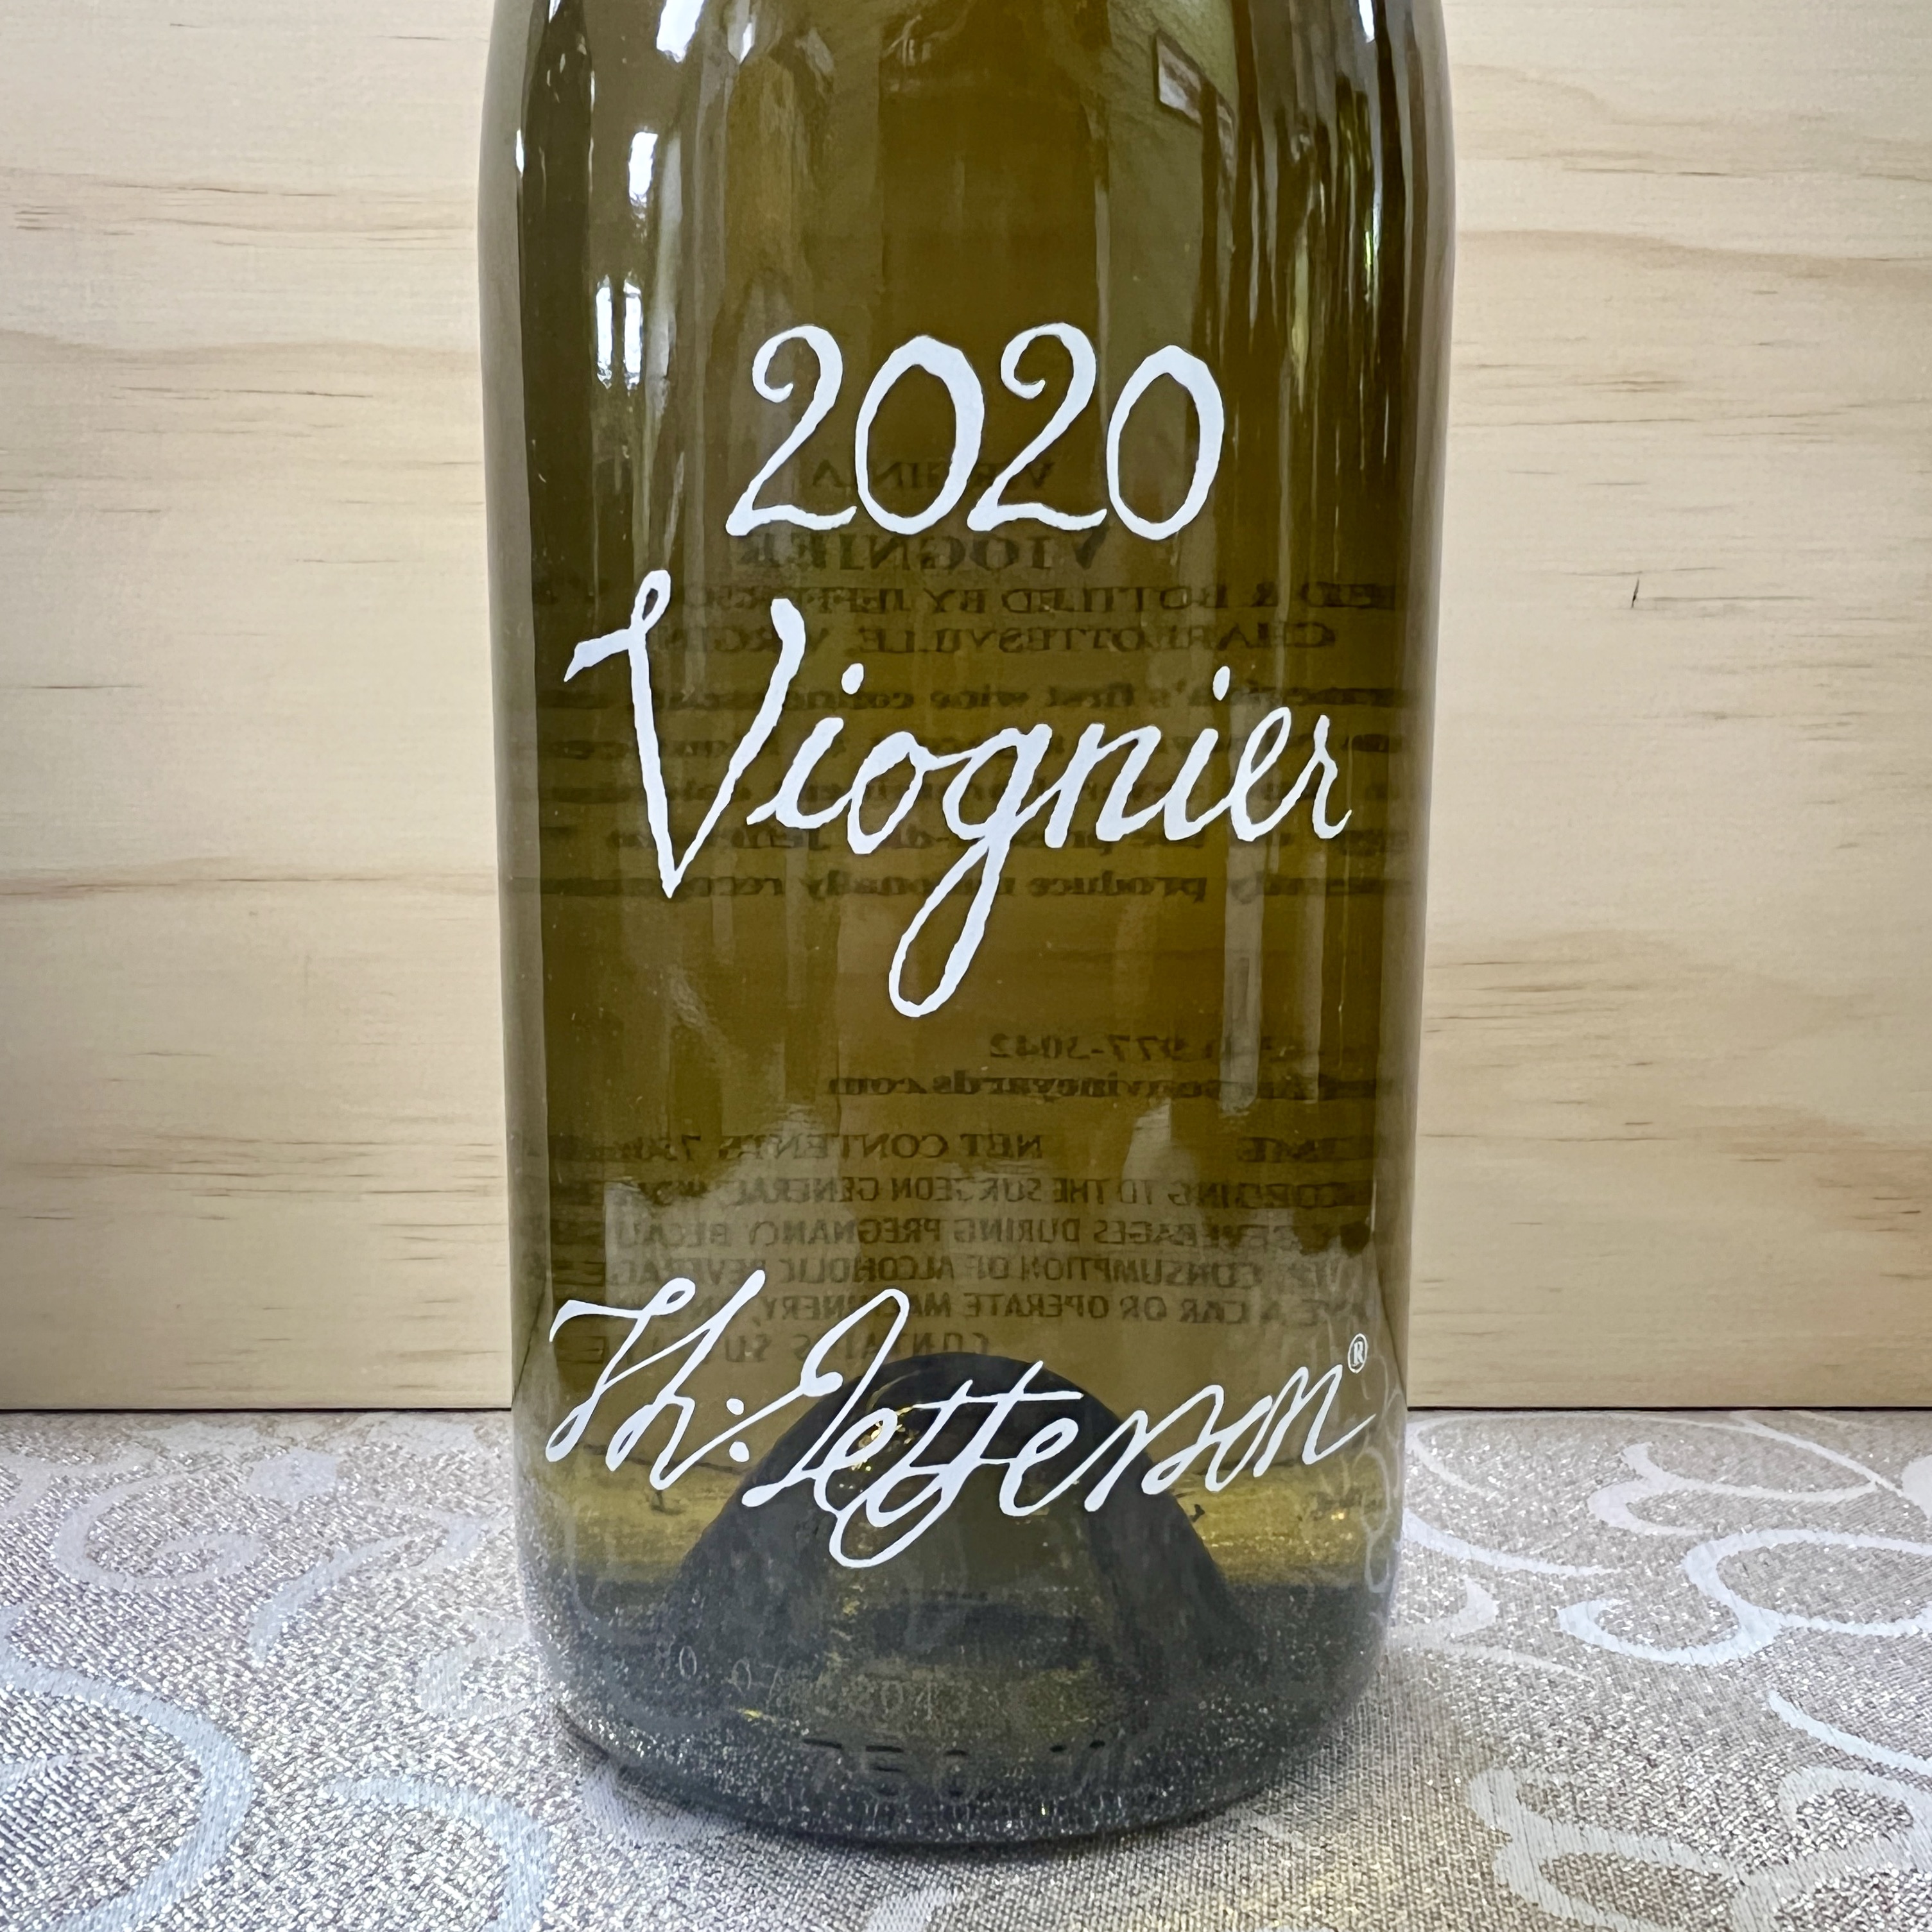 Jefferson Vineyards Viognier 2020